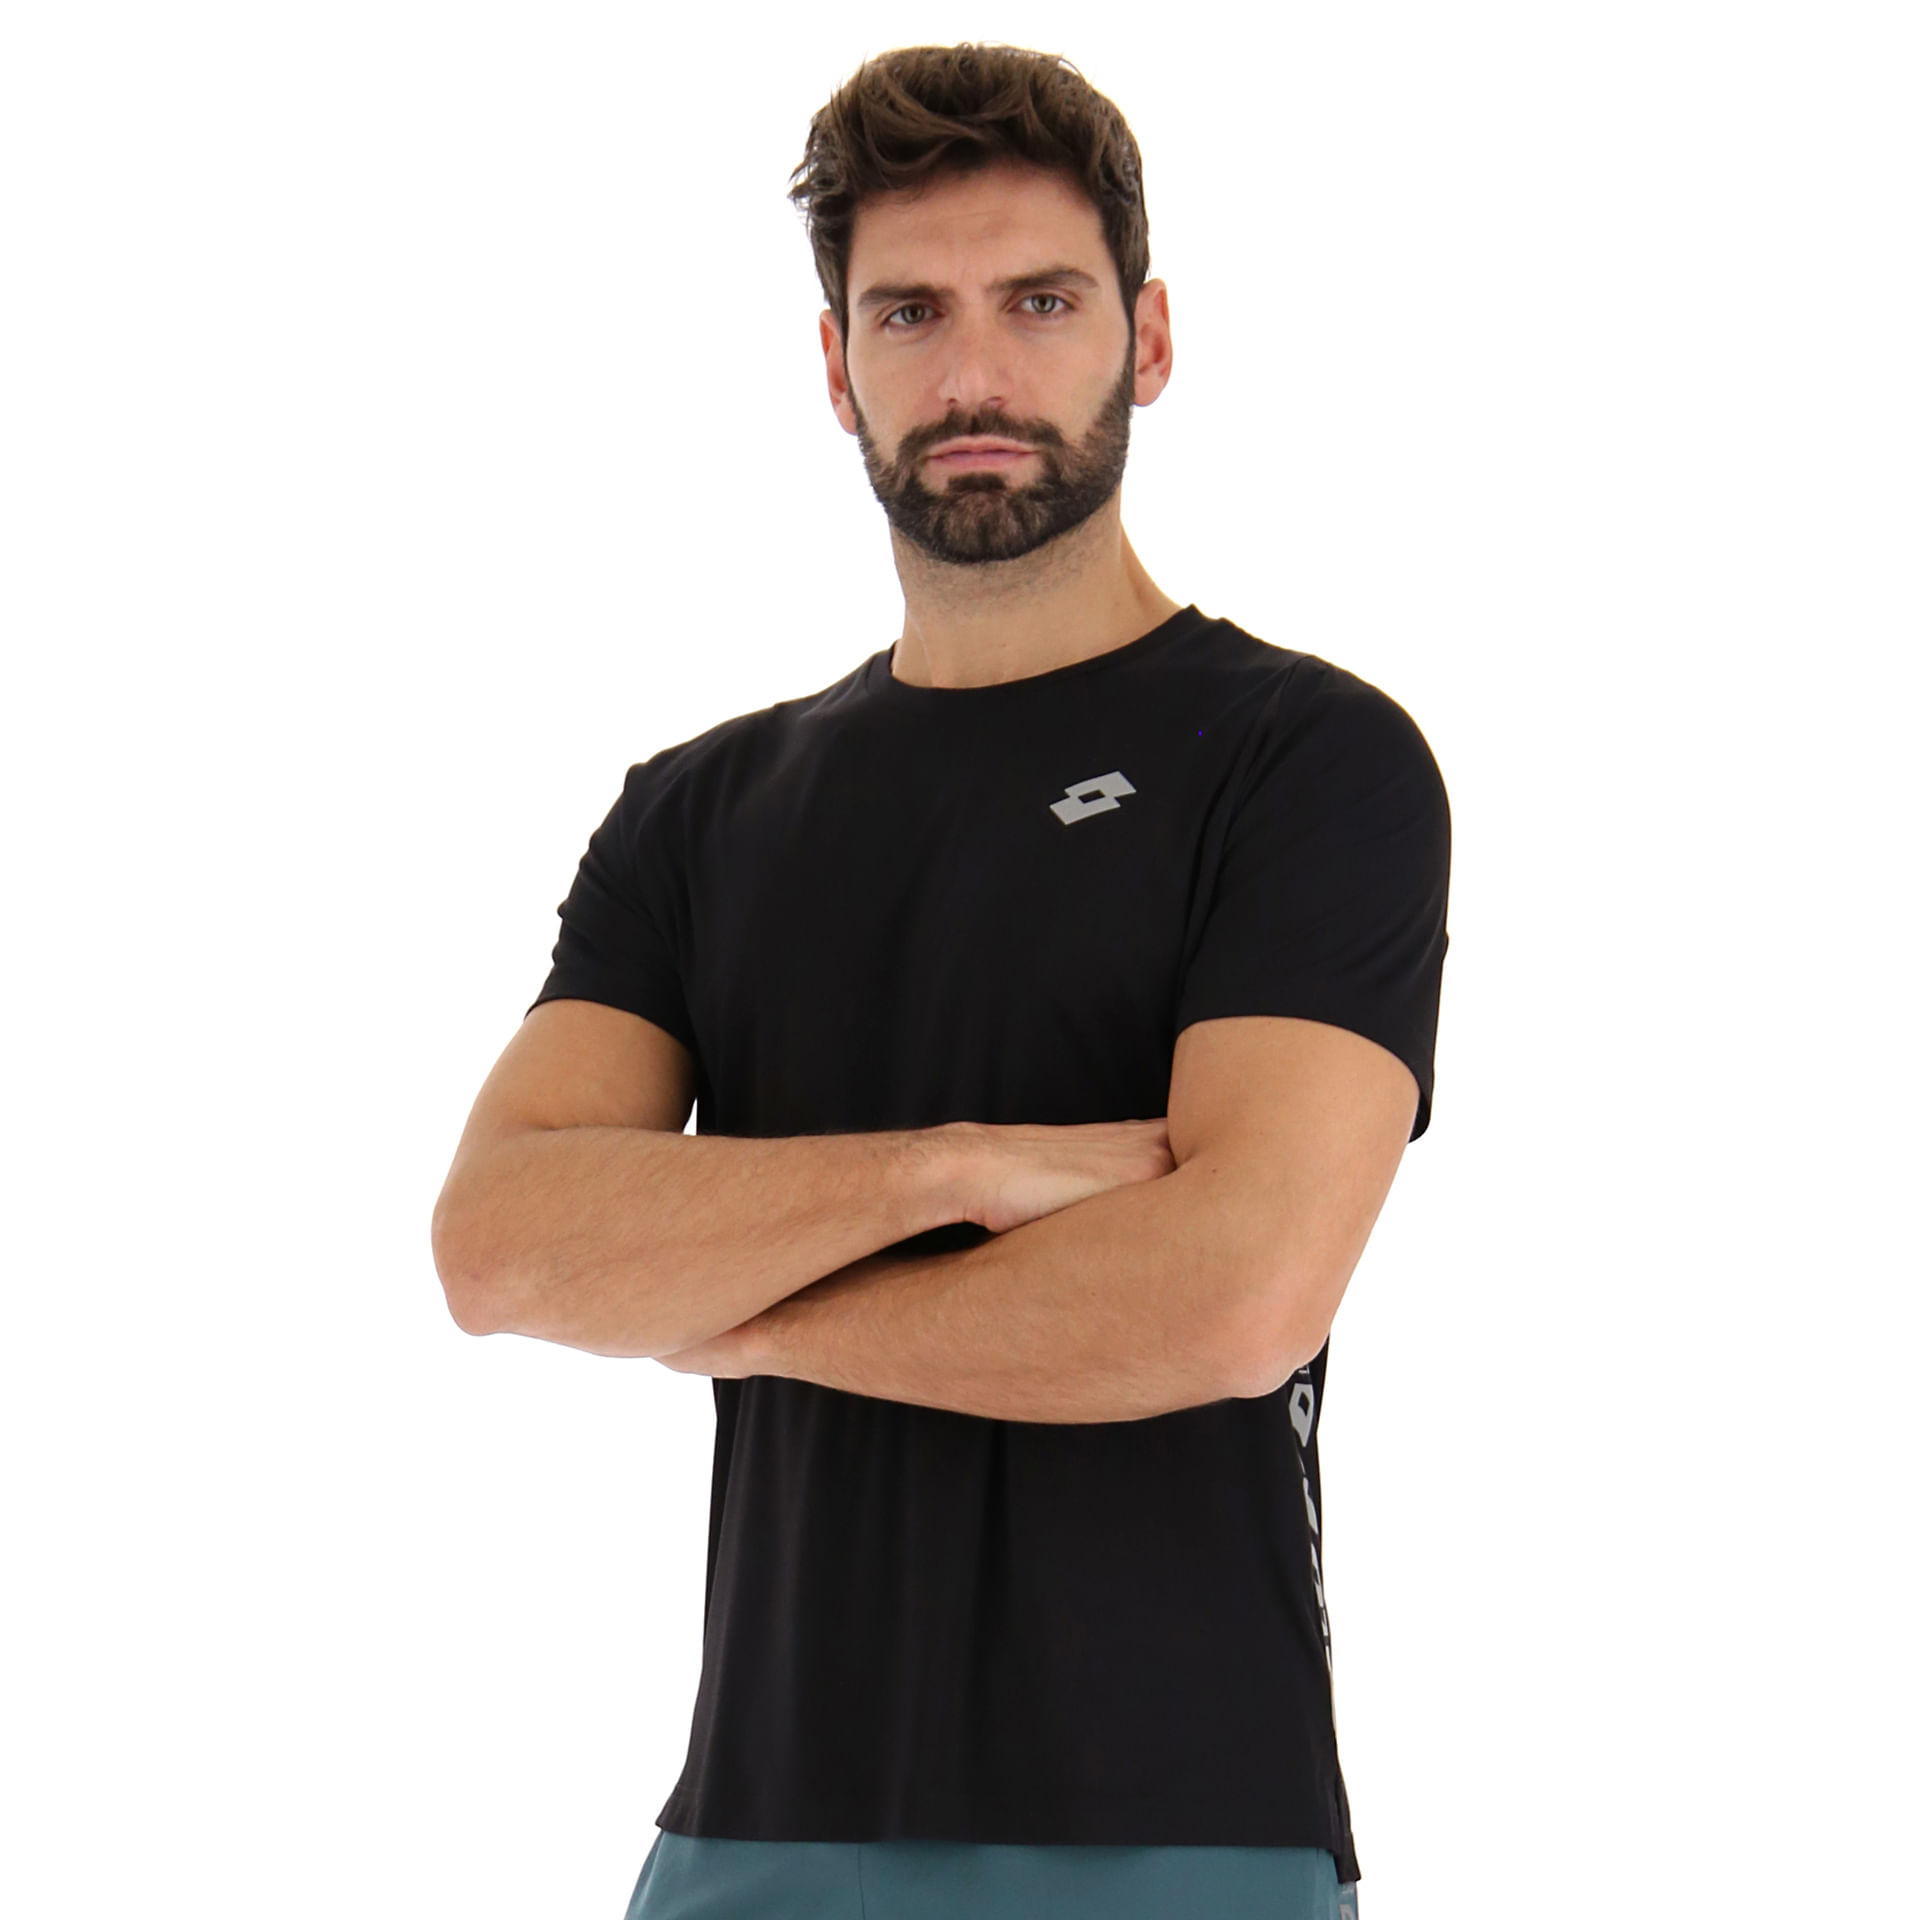 M12117 - Remera deportiva hombre - #sportwear  Camisetas crossfit,  Camisetas deportivas, Ropa deportiva para hombre